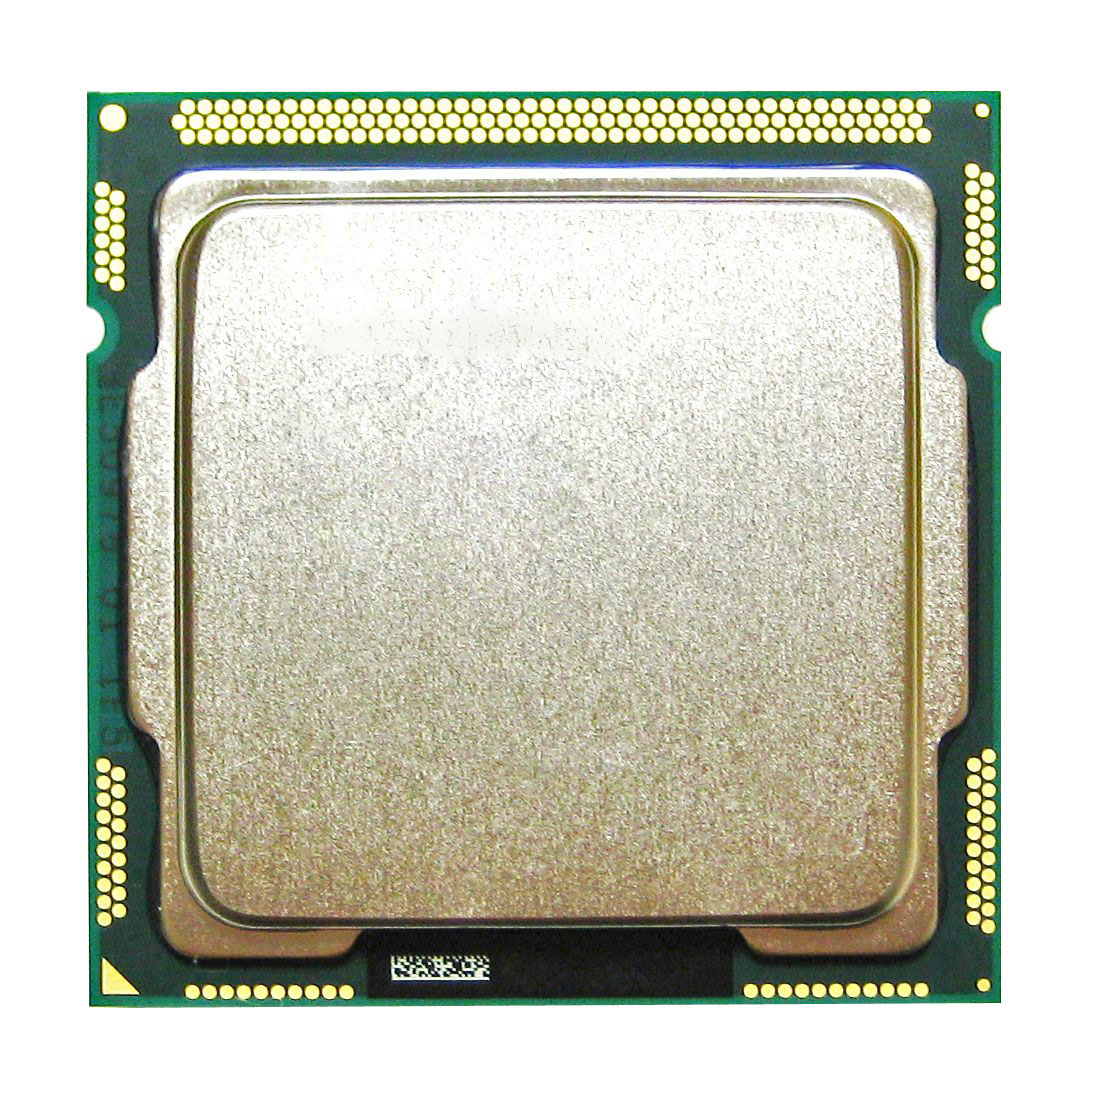 BX80623I52400S Intel Core i5-2400S Quad Core 2.50GHz 5.00GT/s DMI 6MB L3 Cache Socket LGA1155 Desktop Processor